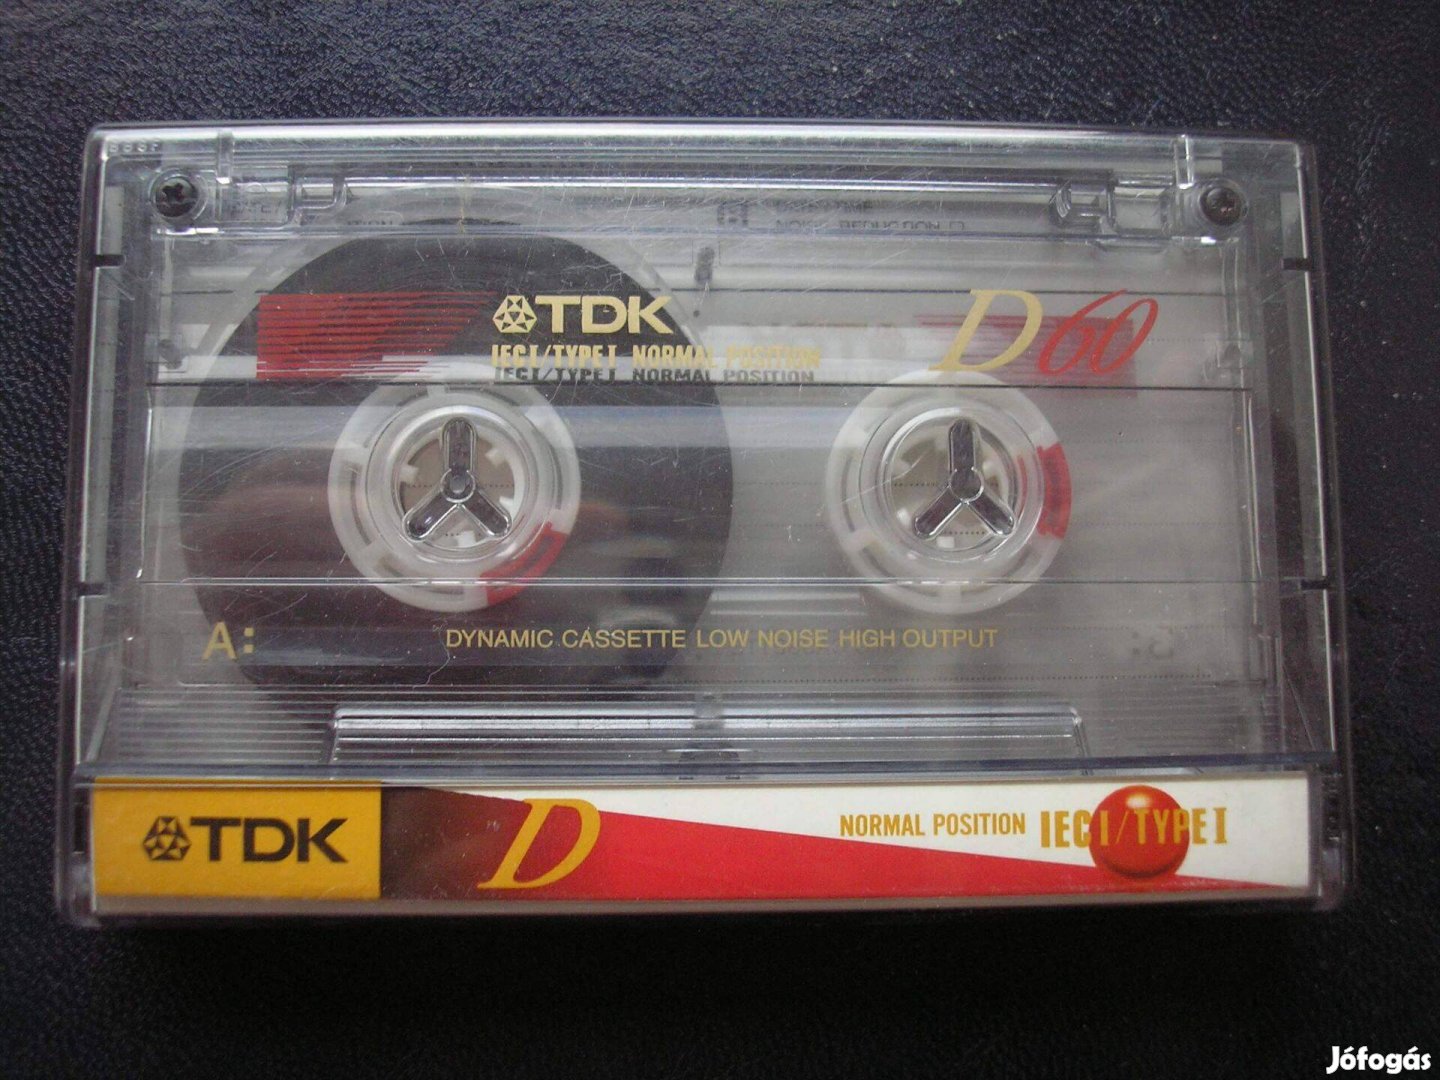 TDK D 60 Dynamic Cassette Low Noise High Output kazetta